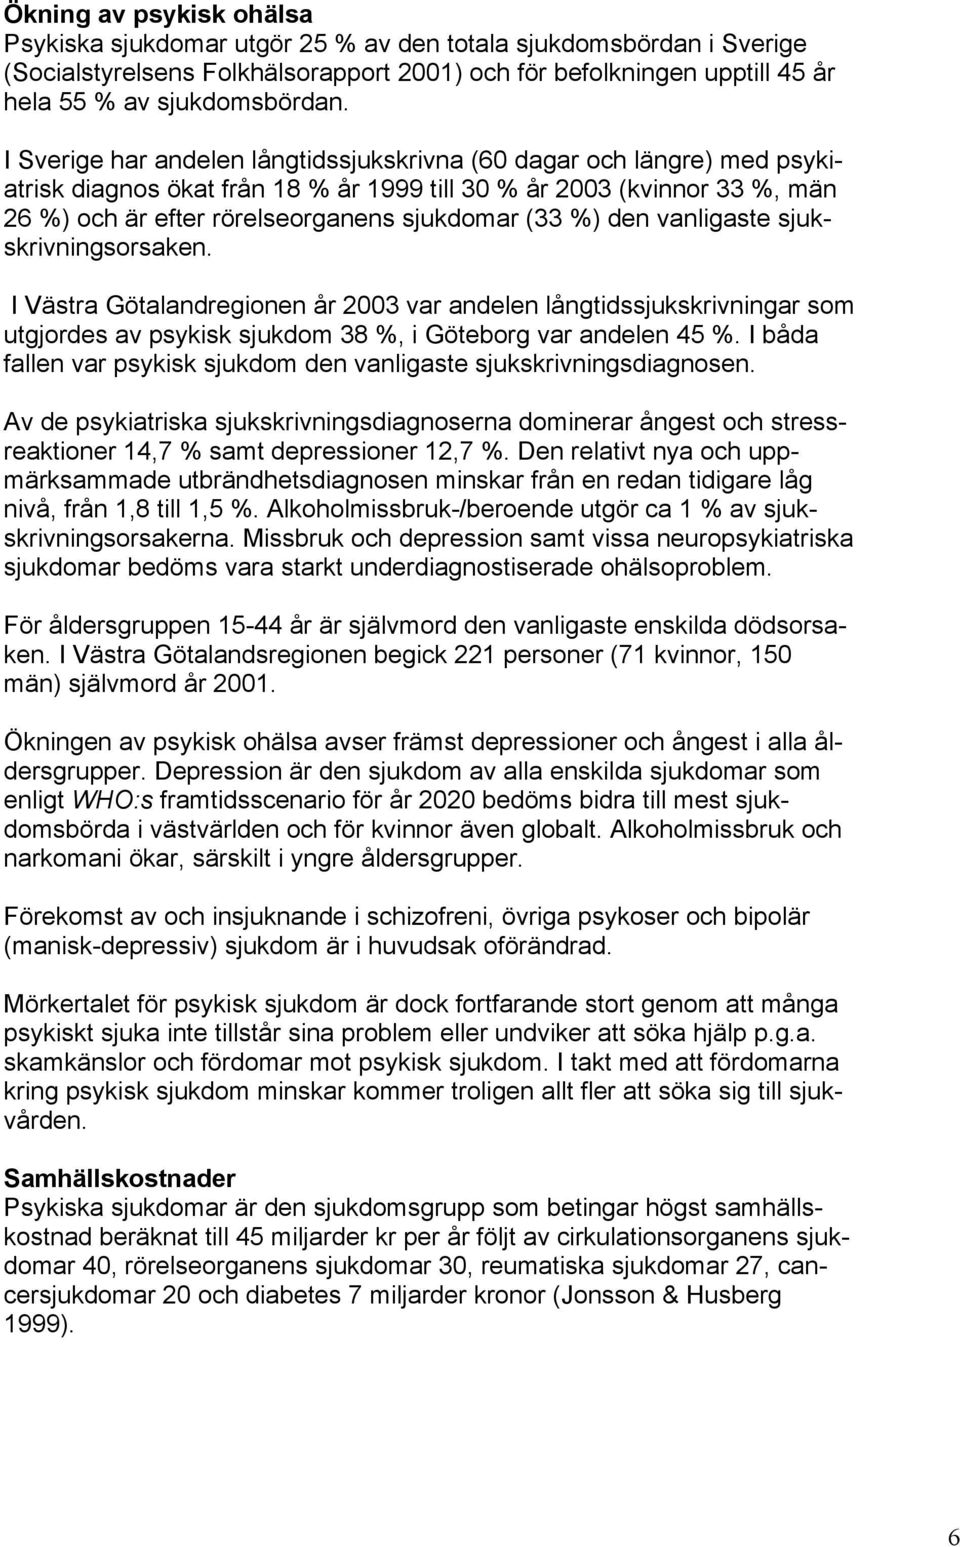 den vanligaste sjukskrivningsorsaken. I Västra Götalandregionen år 2003 var andelen långtidssjukskrivningar som utgjordes av psykisk sjukdom 38 %, i Göteborg var andelen 45 %.